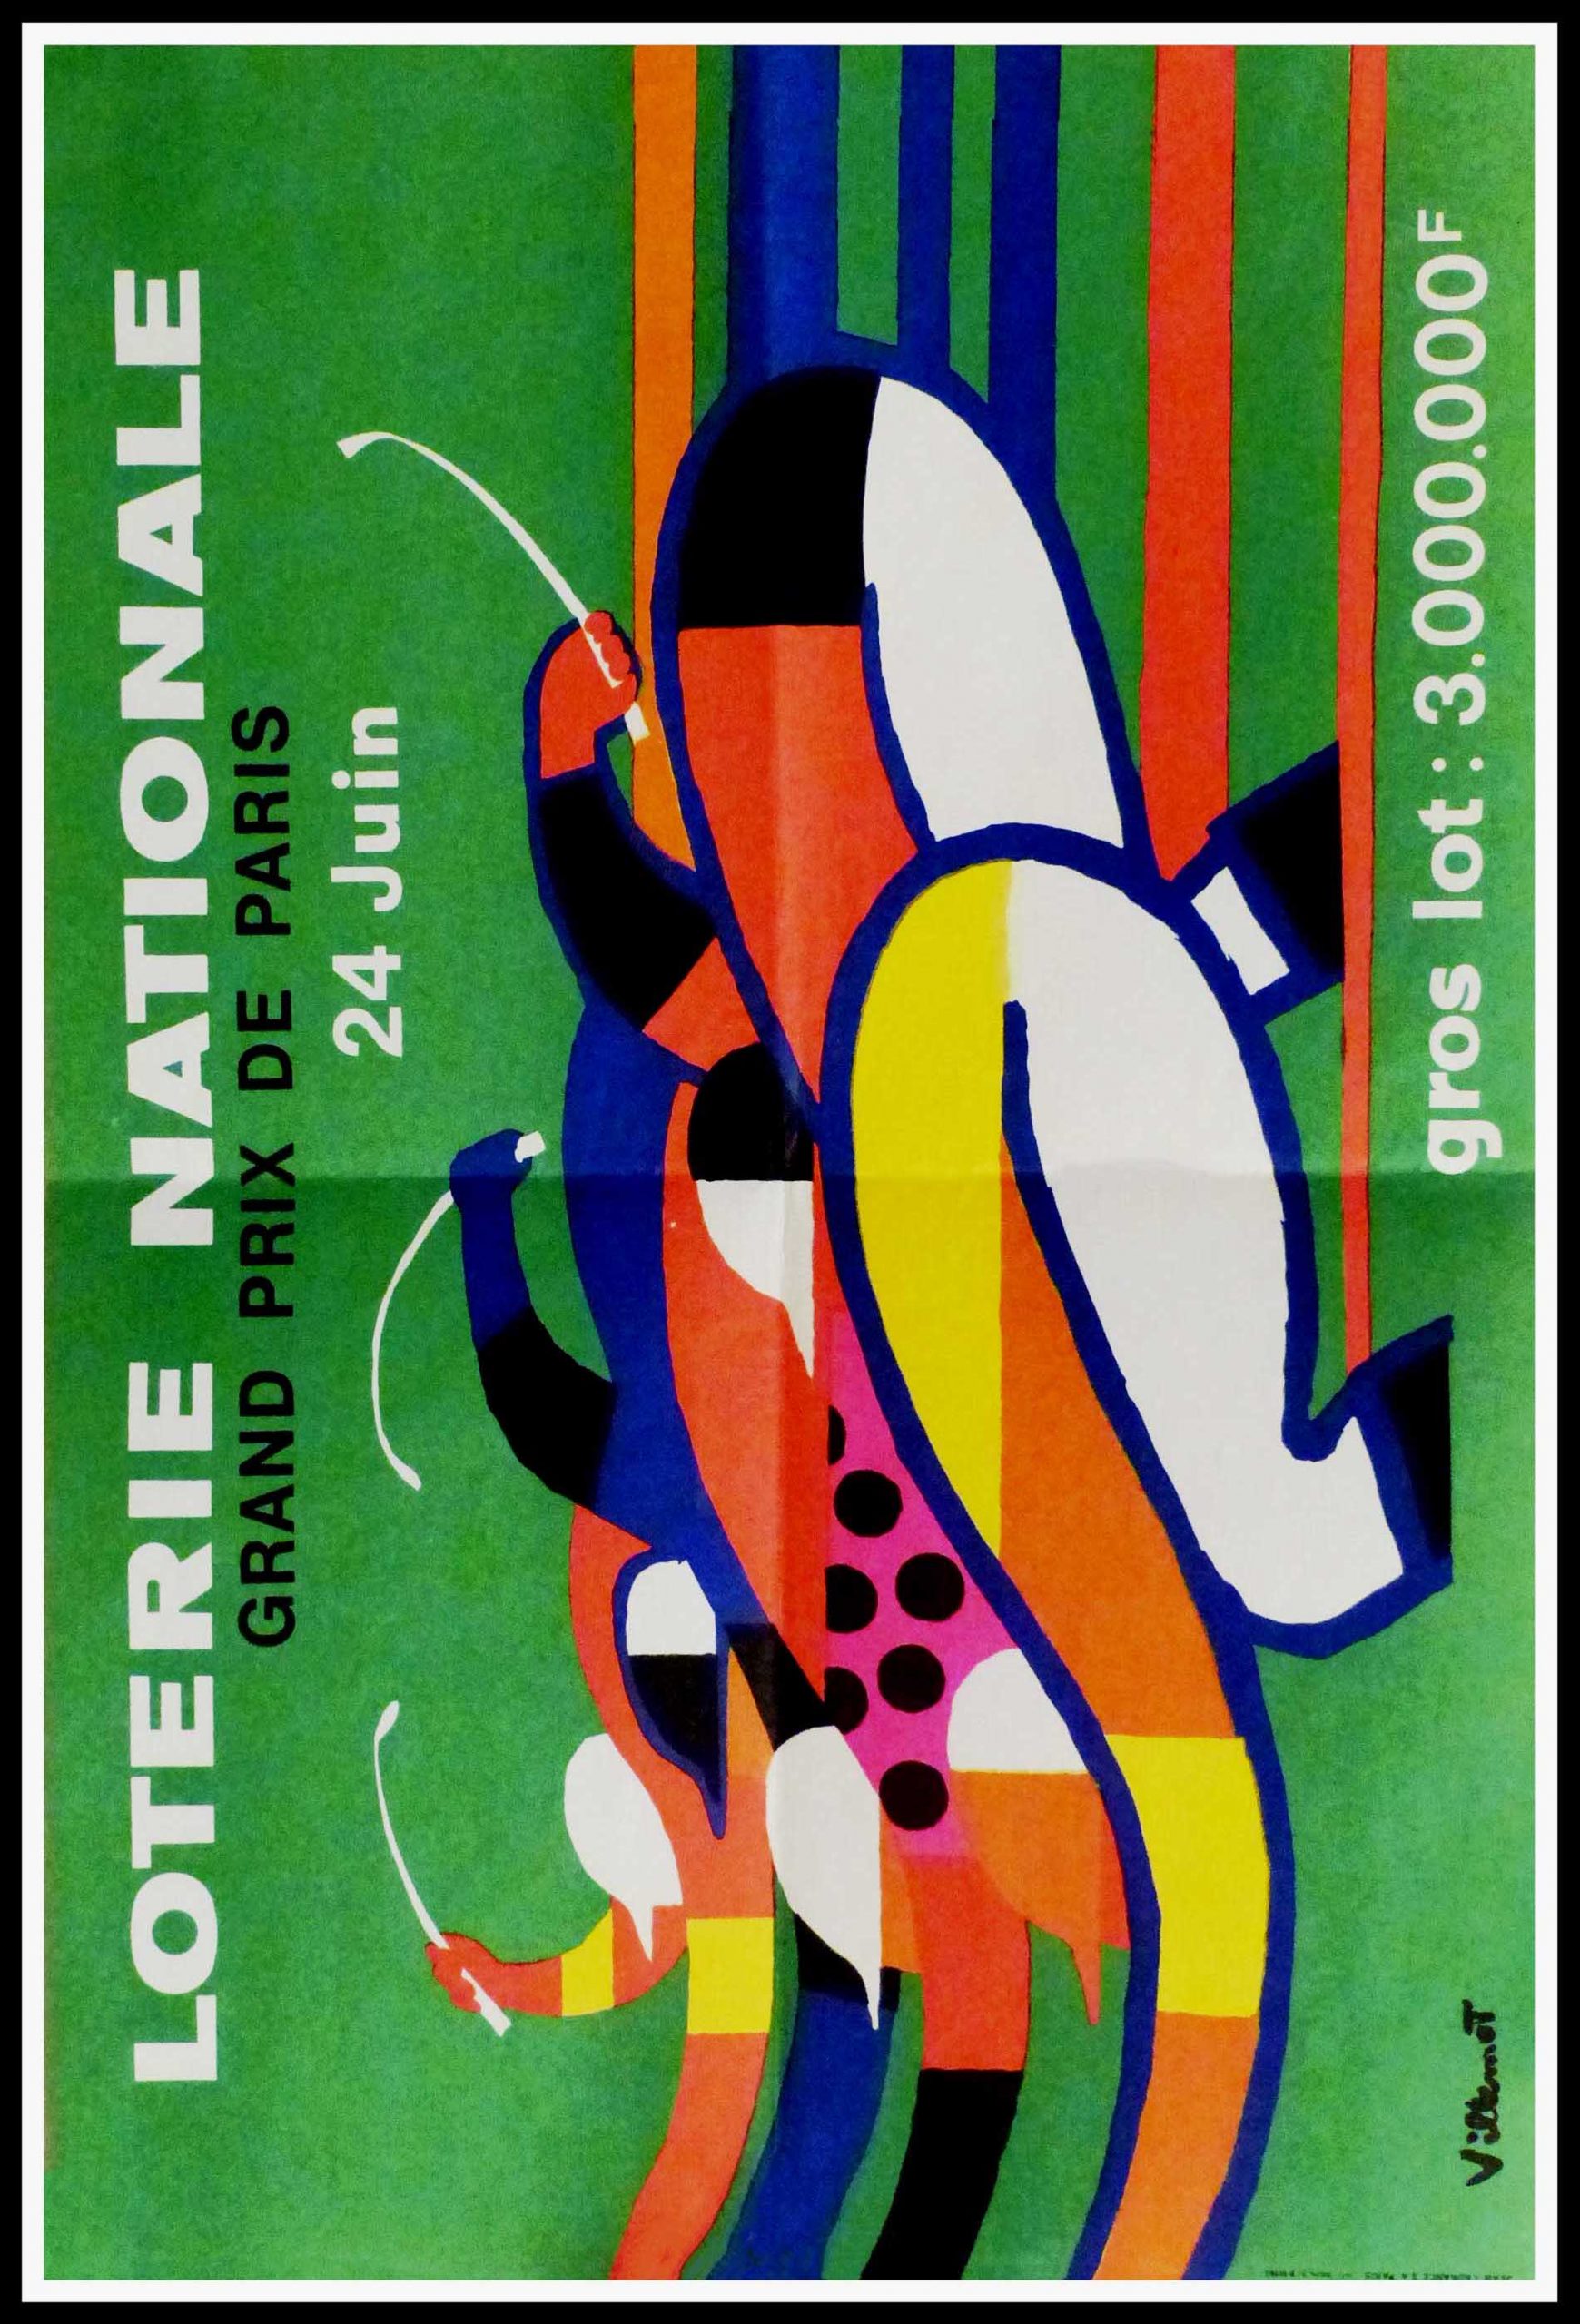 (alt="Original vintage poster Loterie Nationale, Grand Prix de Paris, 1960 realised by Villemot and printed by Jean Laurance, Paris.")